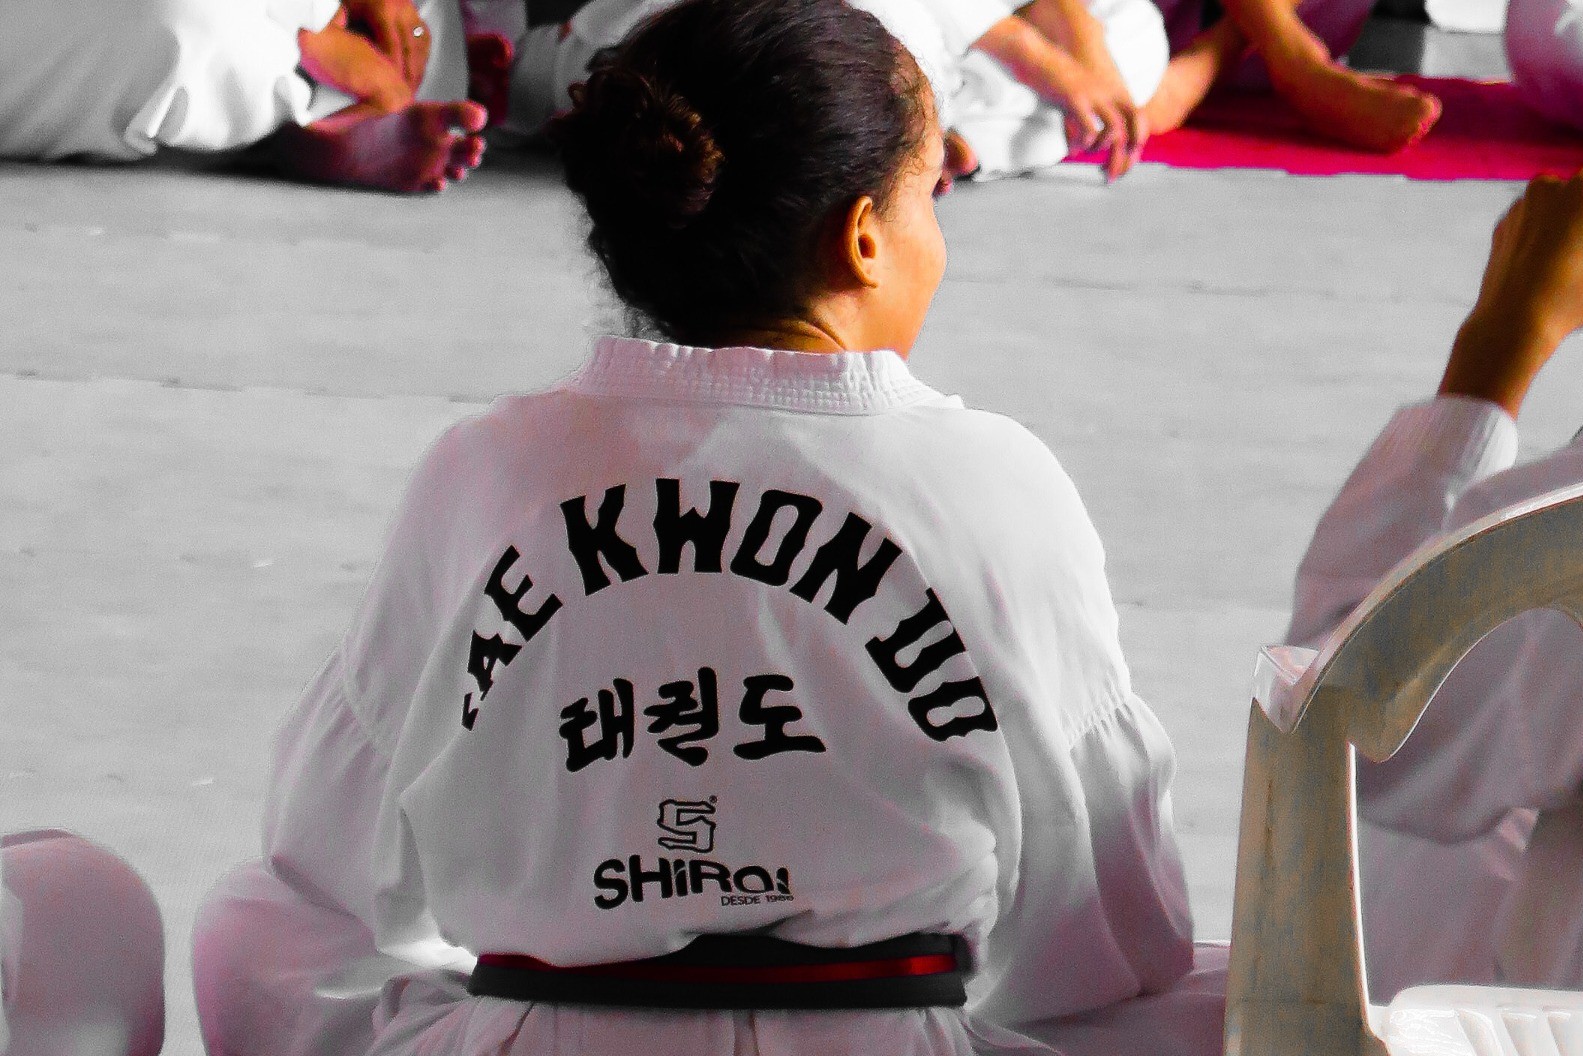 Henkilöt istuvat taekwondopuvussa liikuntasalin lattialla. Kuvassa yhden henkilön selkä kuvattuna lähempää ja puvussa näkyy erilaisia kirjaimia.